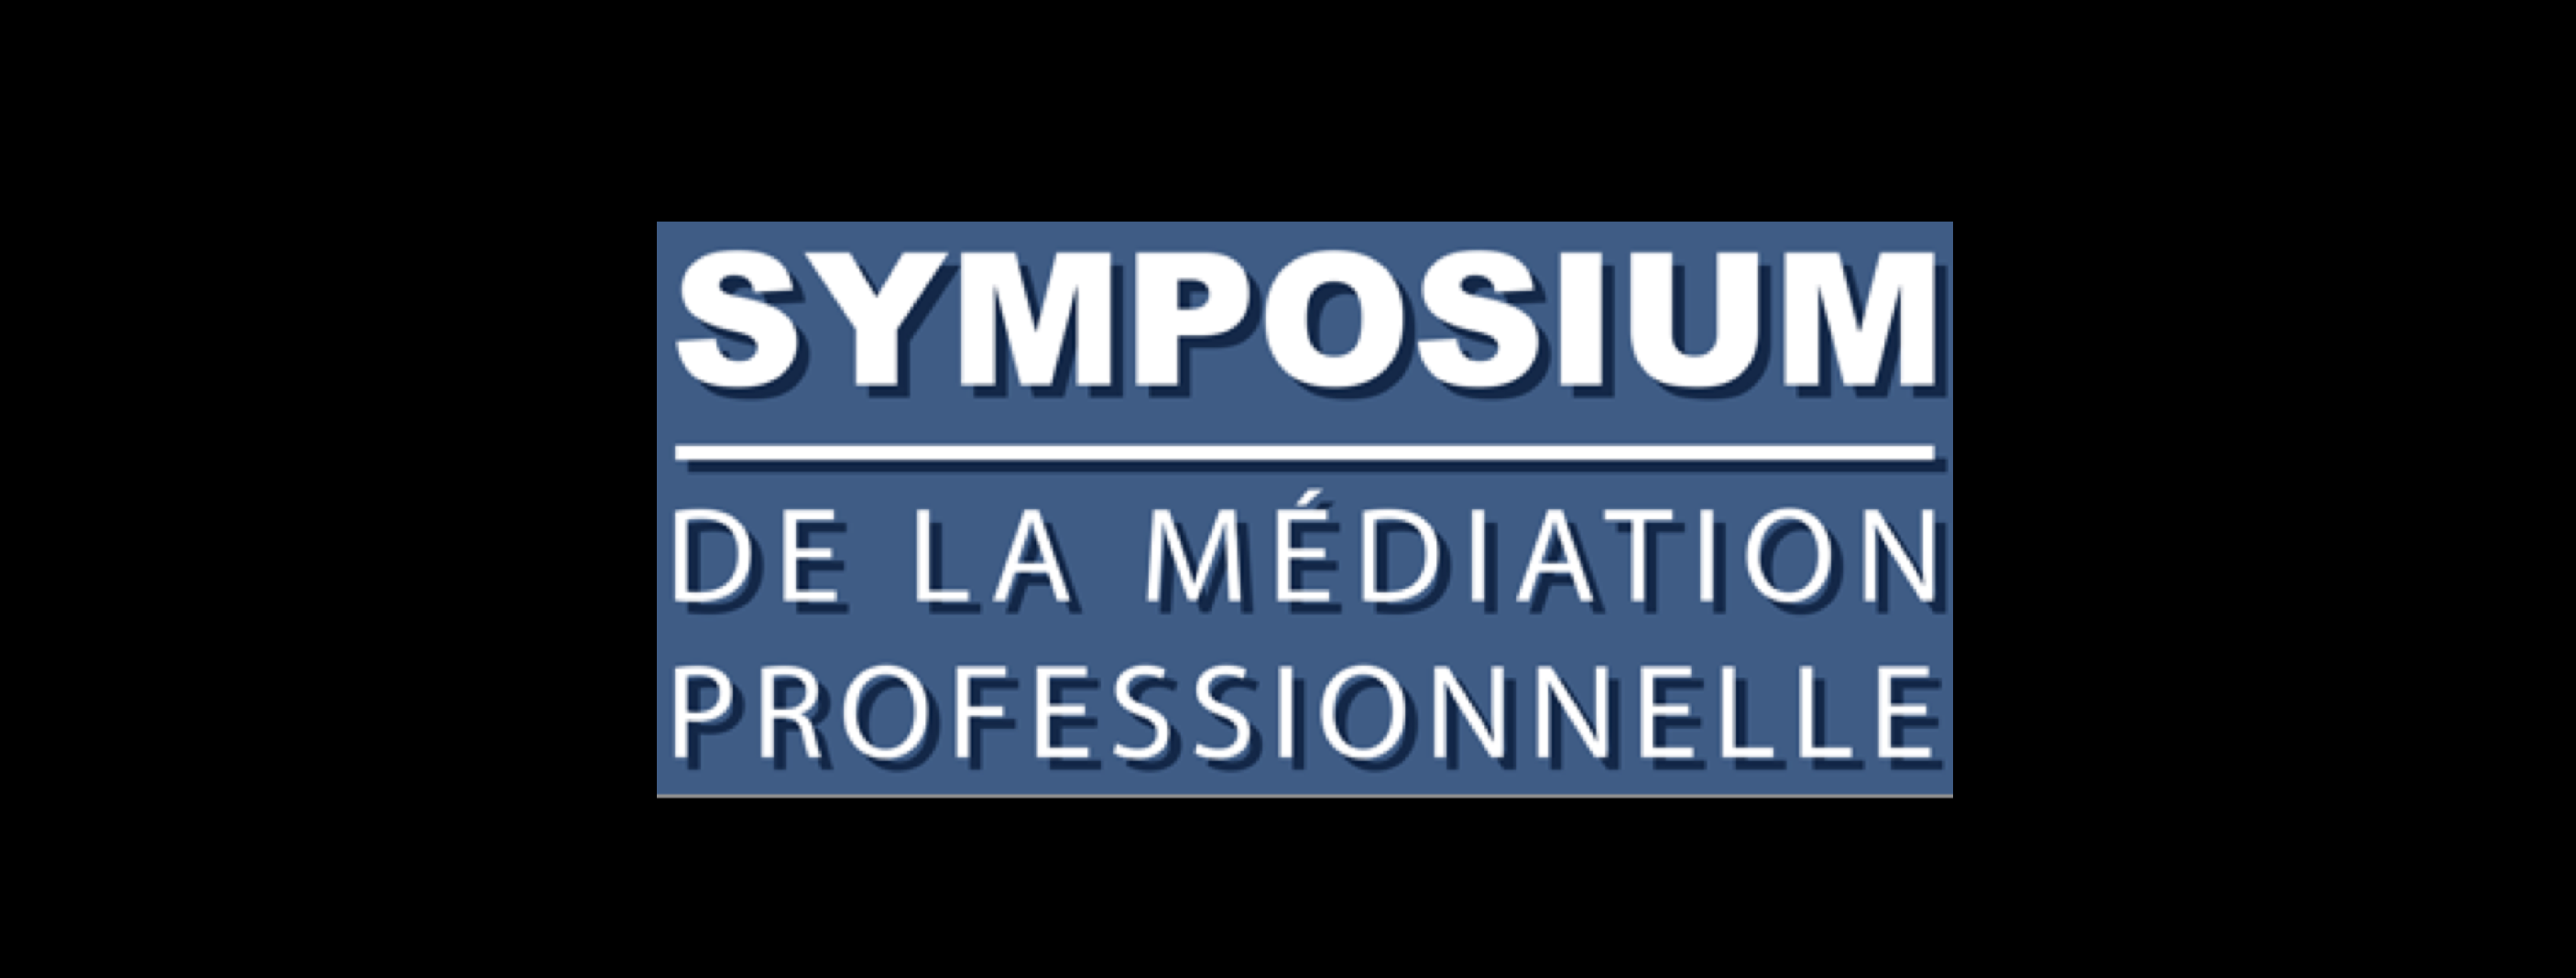 Symposium de la médiation professionnelle